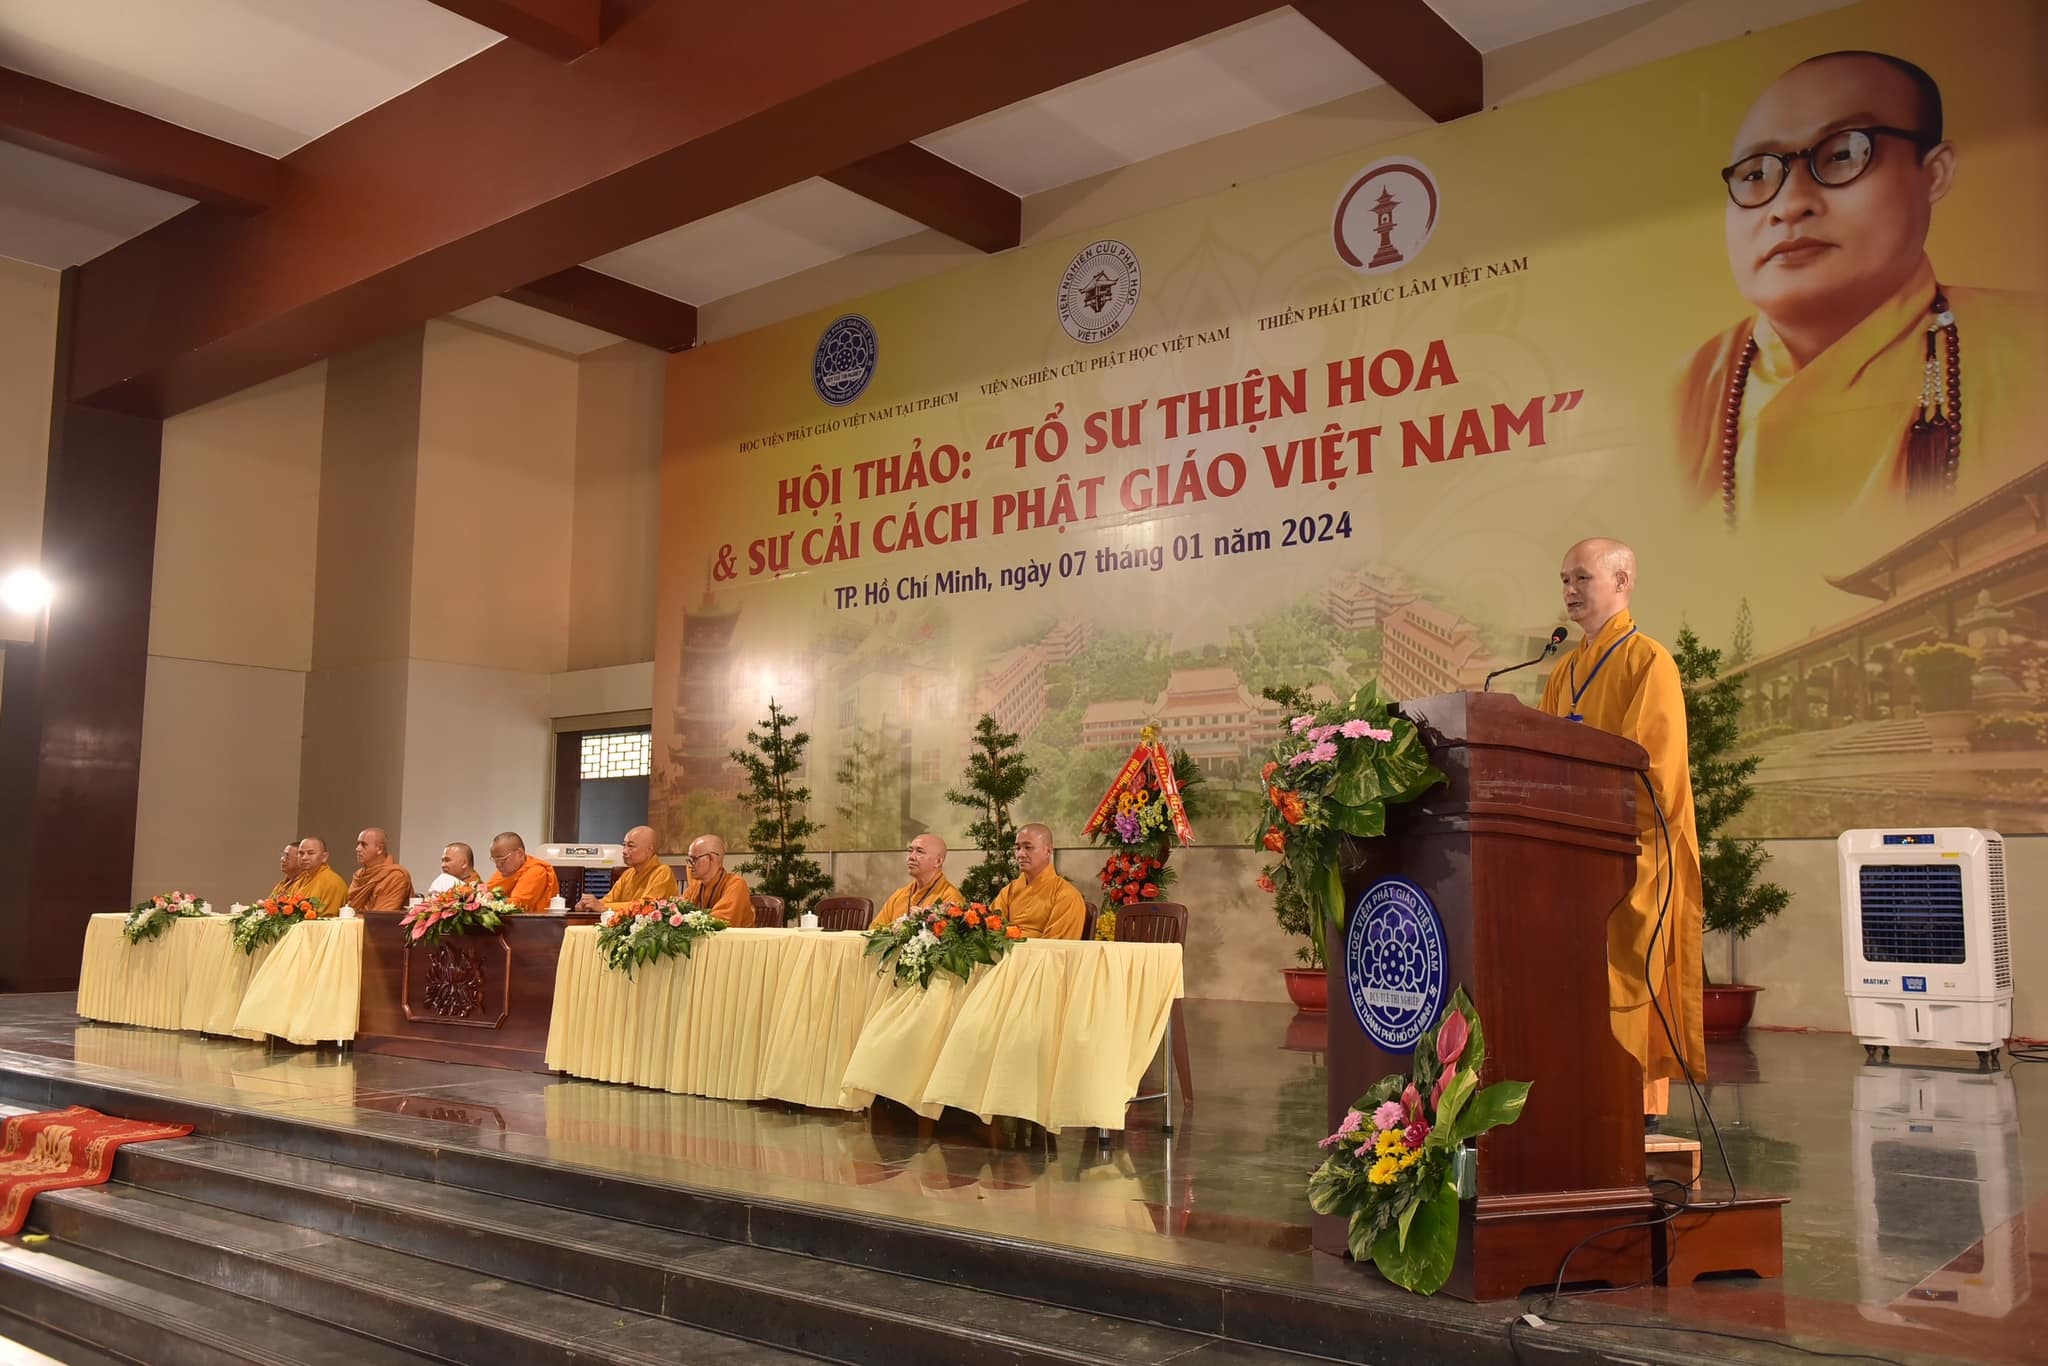 Gia Bảo Vô Giá cho Phật Giáo Việt Nam và Thiền Phái Trúc Lâm